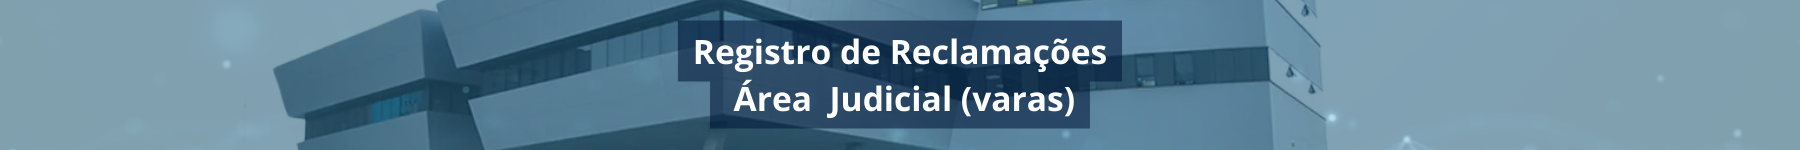 Formulário de Registro de Reclamações da Área Judicial (Varas)